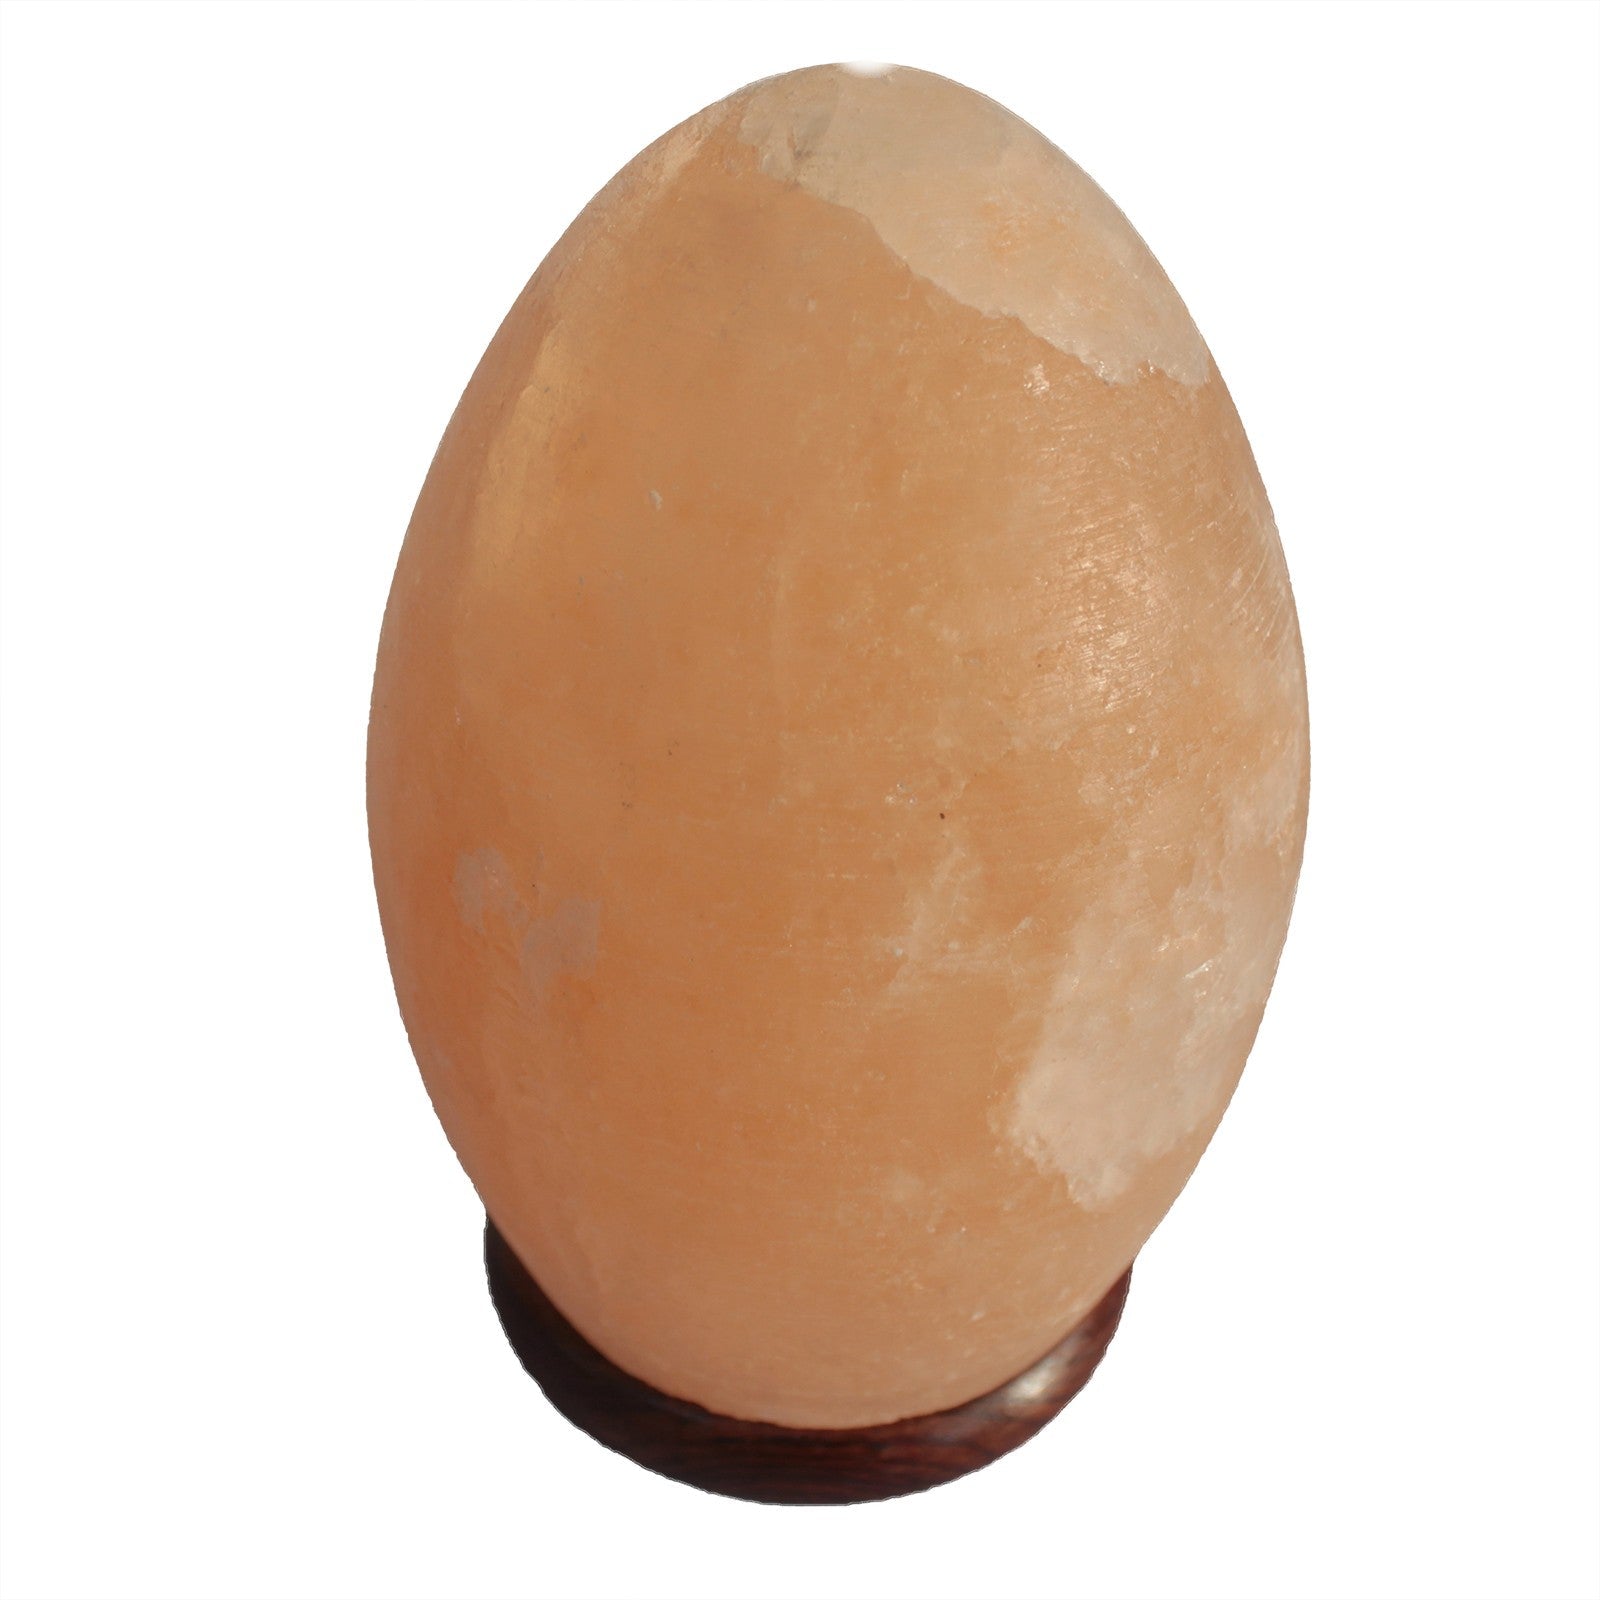 View Salt Lamp Egg Wooden Base information